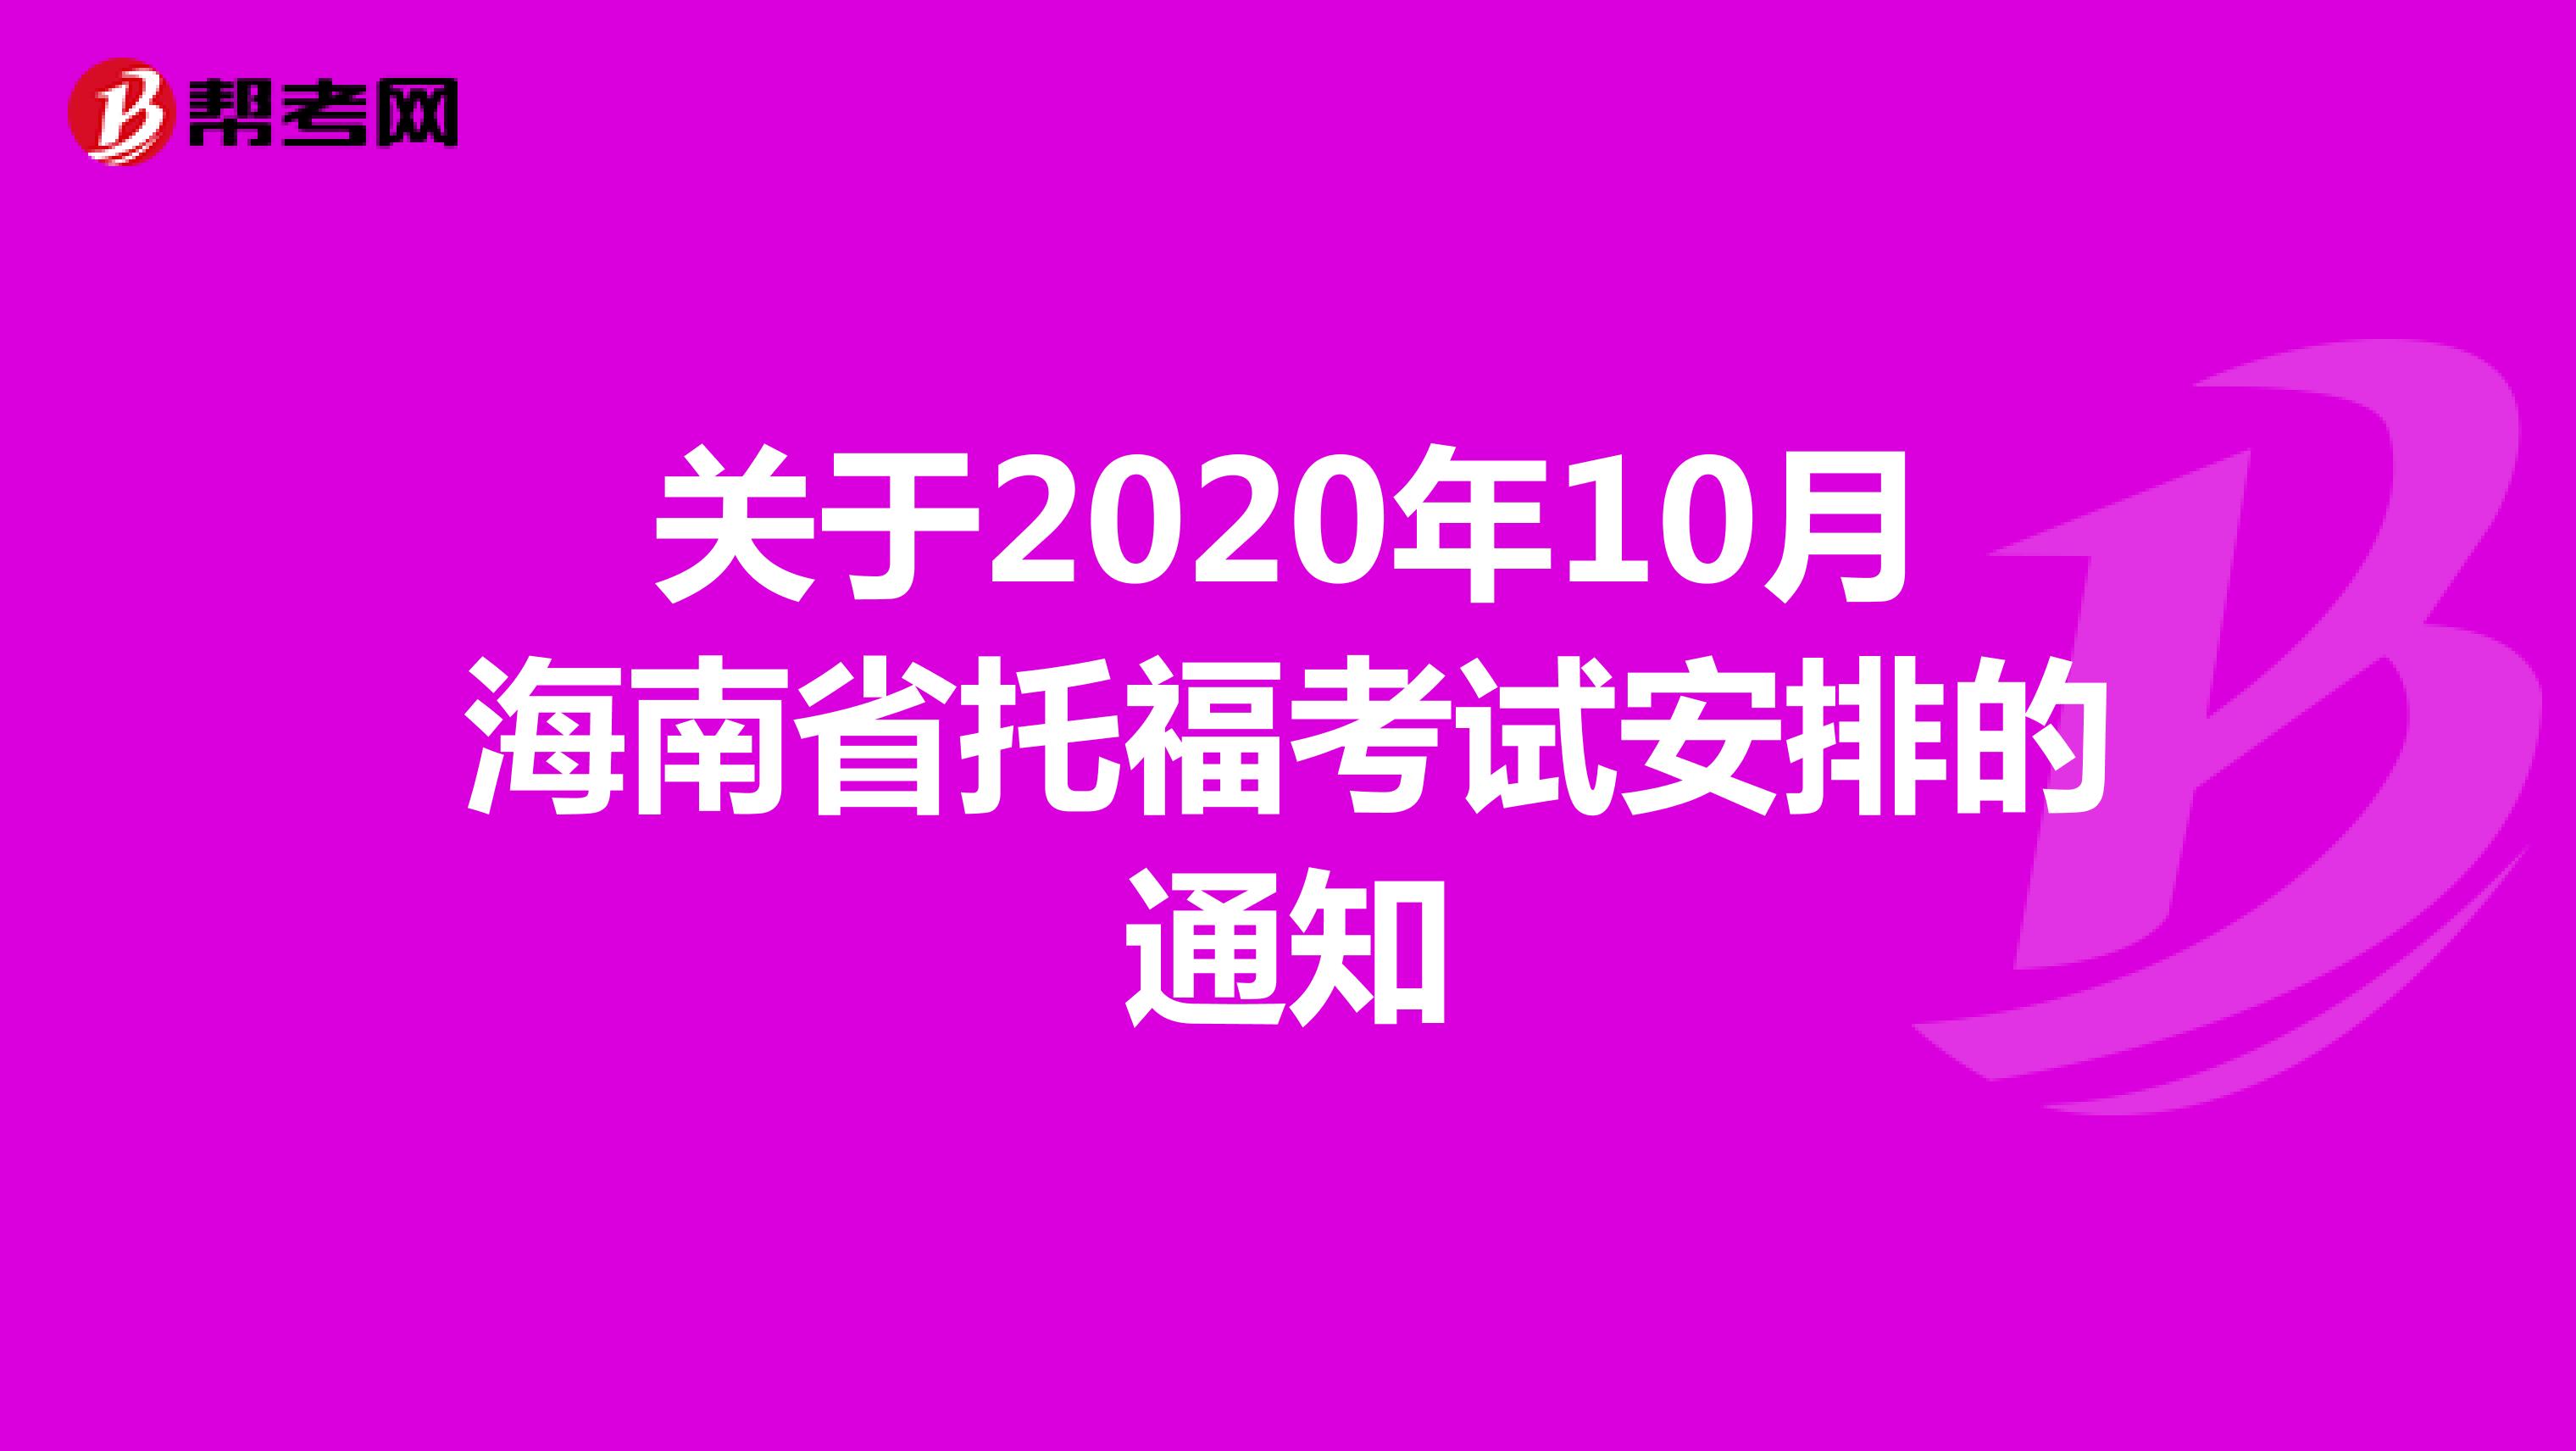 关于2020年10月海南省托福考试安排的通知